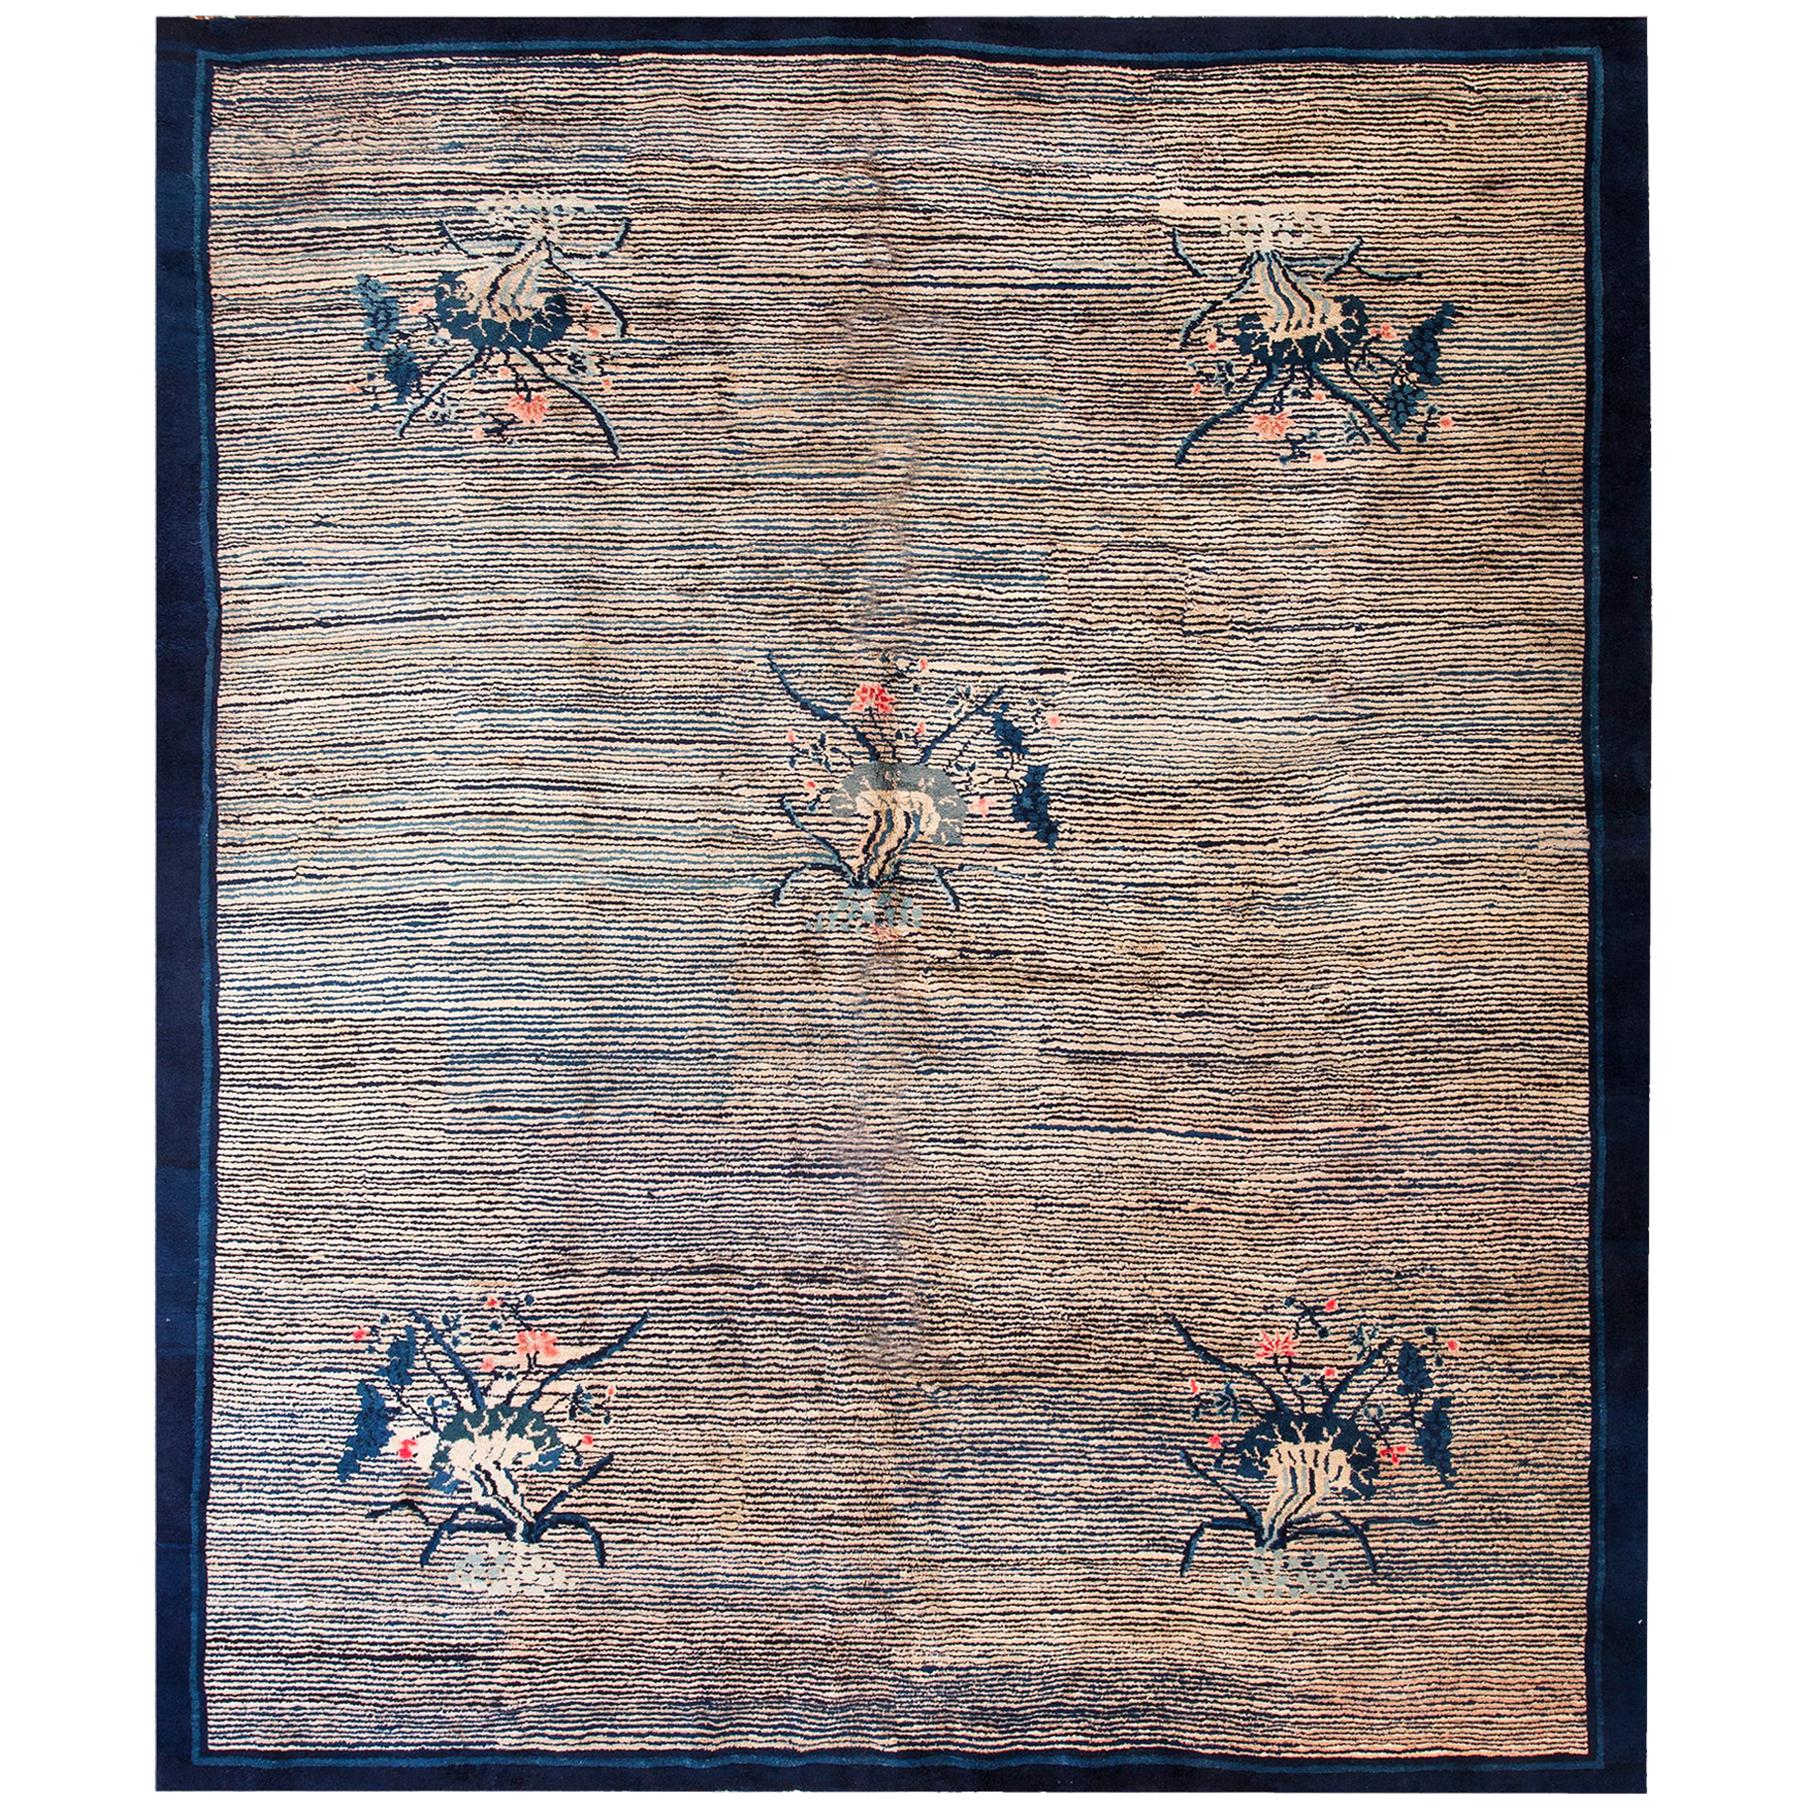 Chinesischer Peking-Teppich des frühen 20. Jahrhunderts ( 8'3" x 9'8" - 250 x 295")